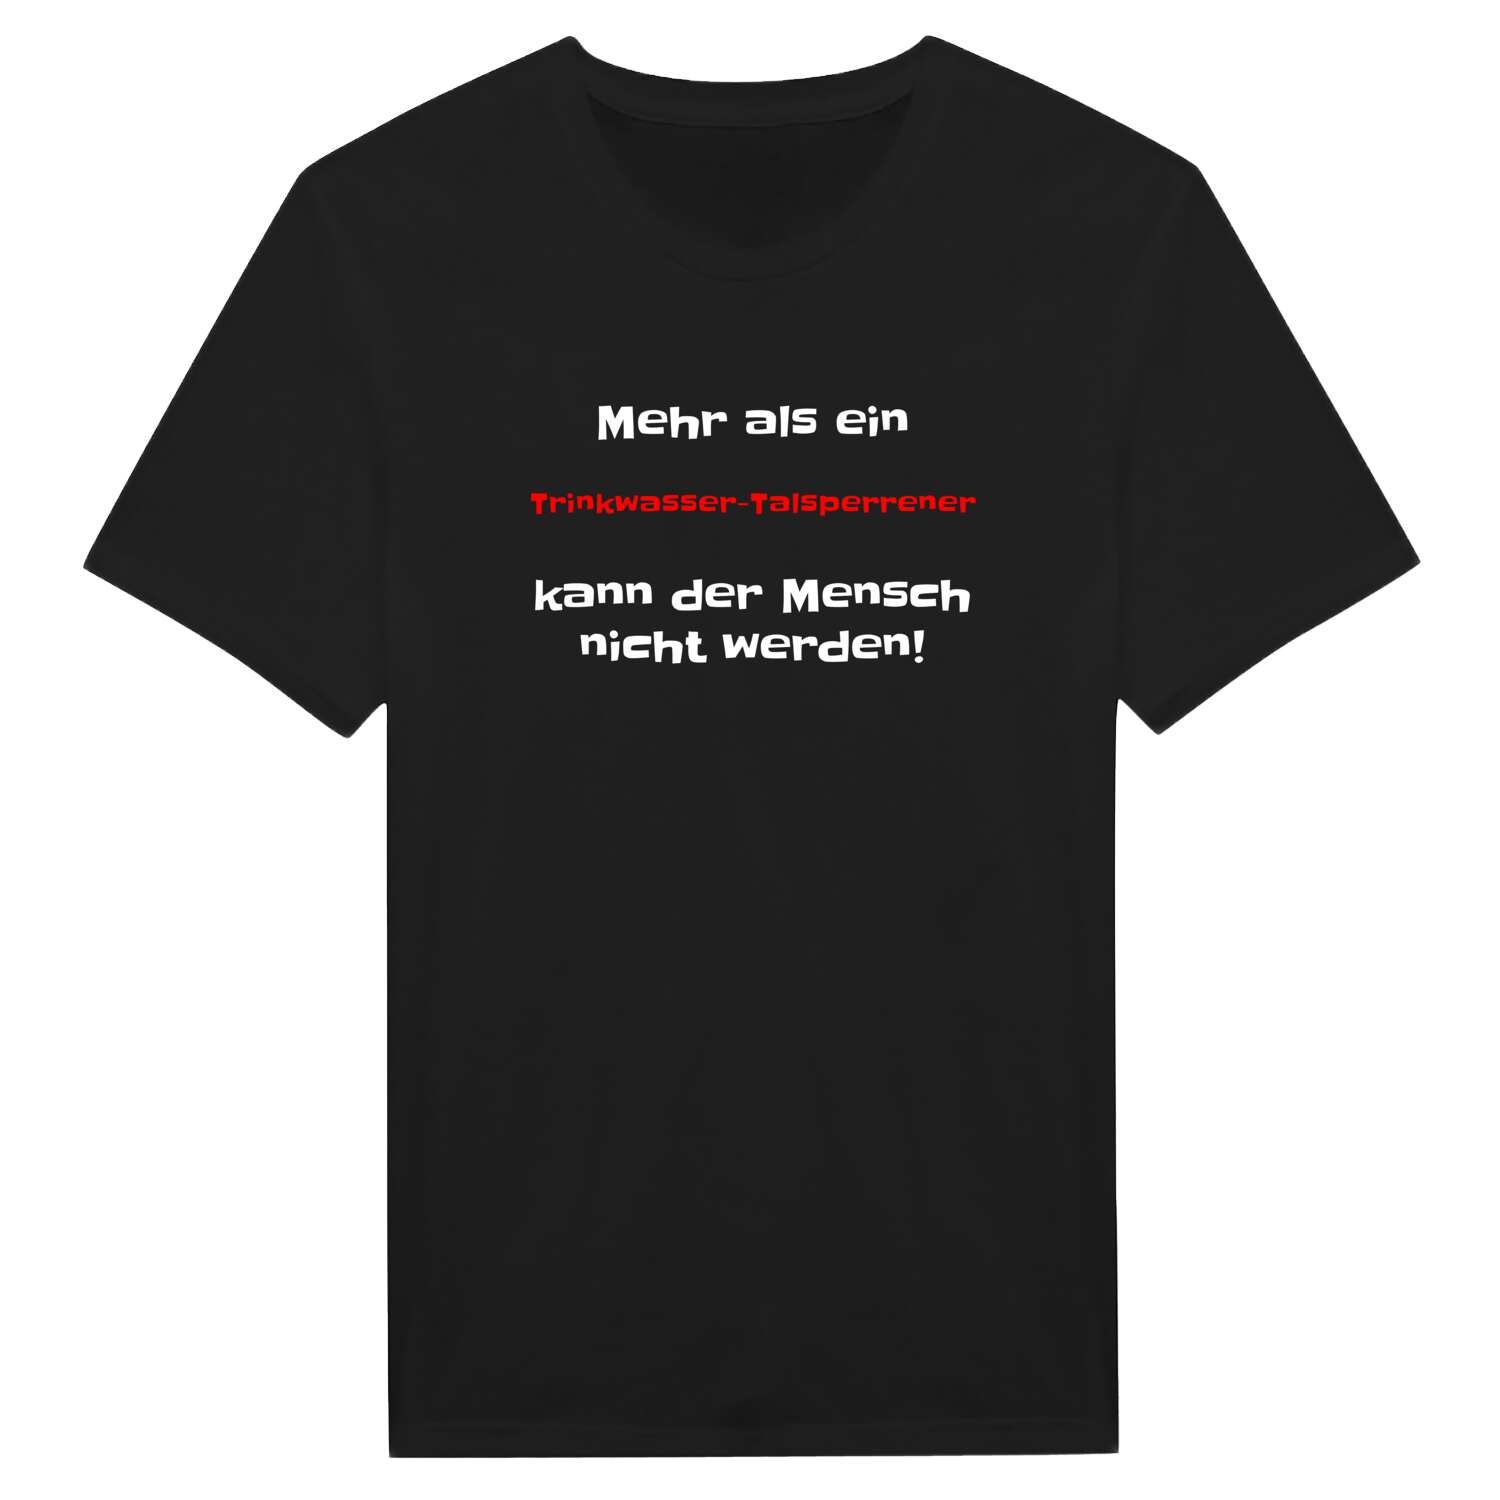 Trinkwasser-Talsperre T-Shirt »Mehr als ein«